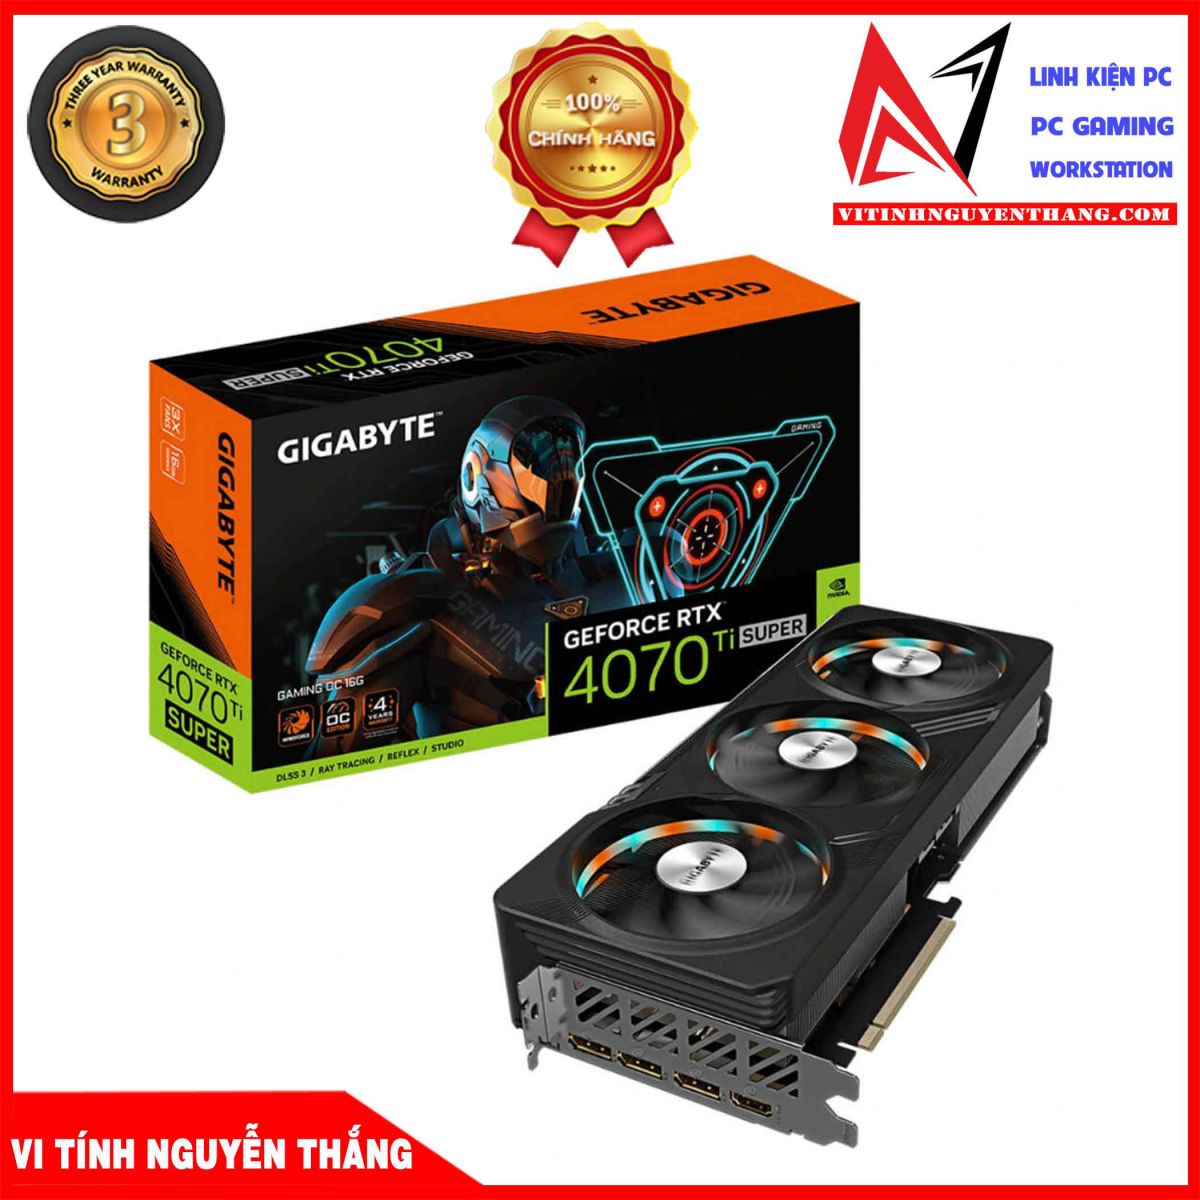 GIGABYTE GẺOCE RTX 4070 Ti SUPER WINFORCE GAMING OC 12GB - VI TÍNH NGUYÊN THẮNG